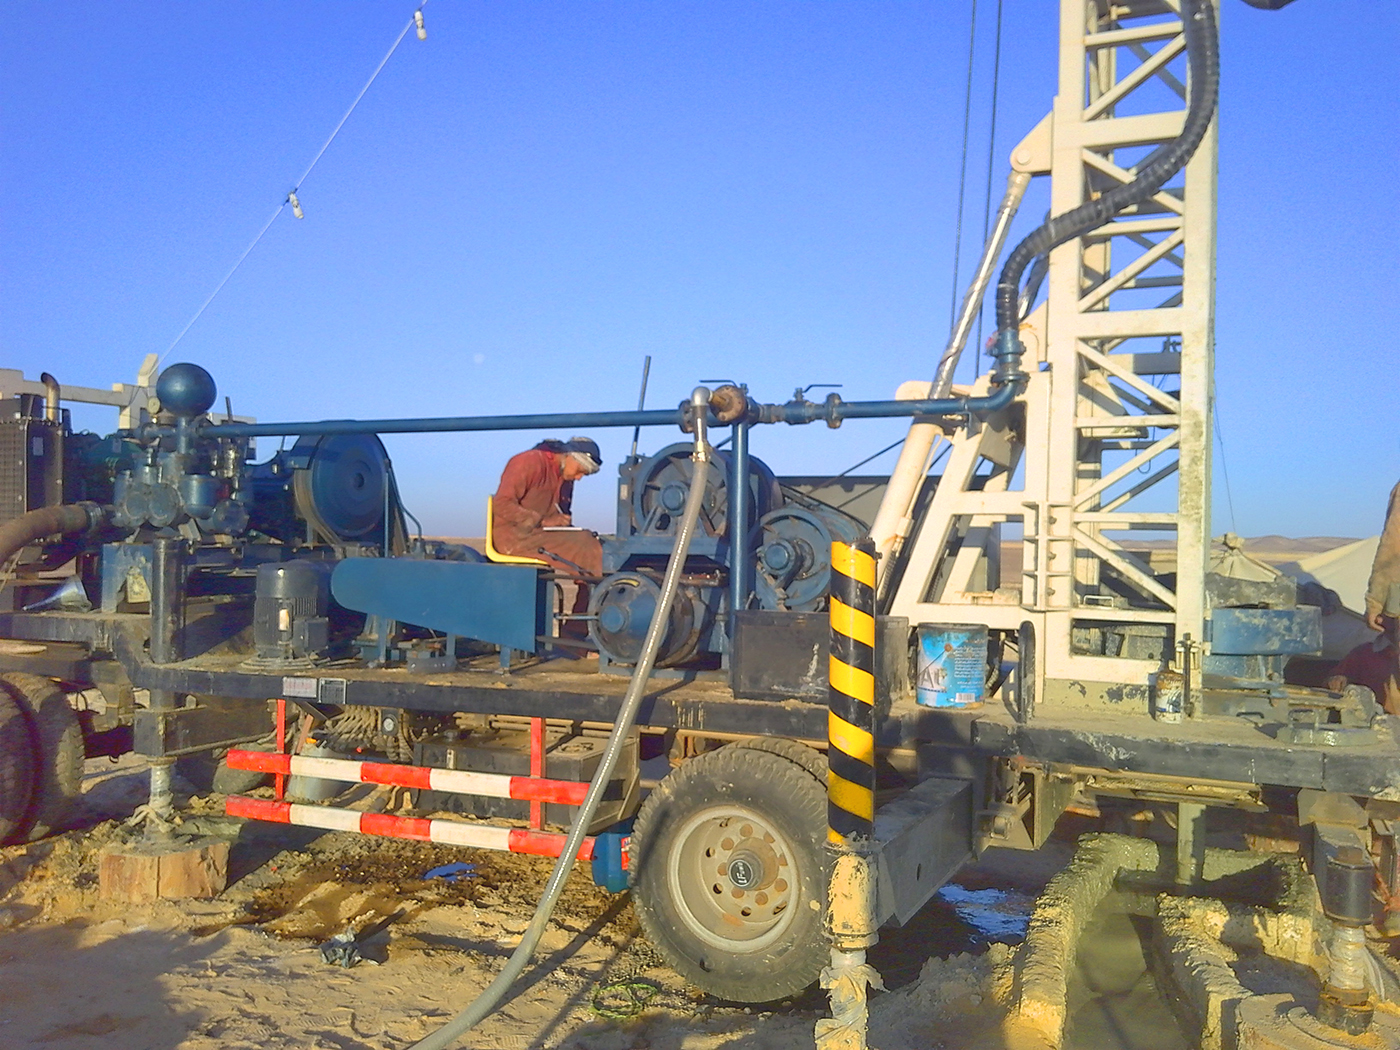 BZT400拖車式水井鉆機在埃及施工現場